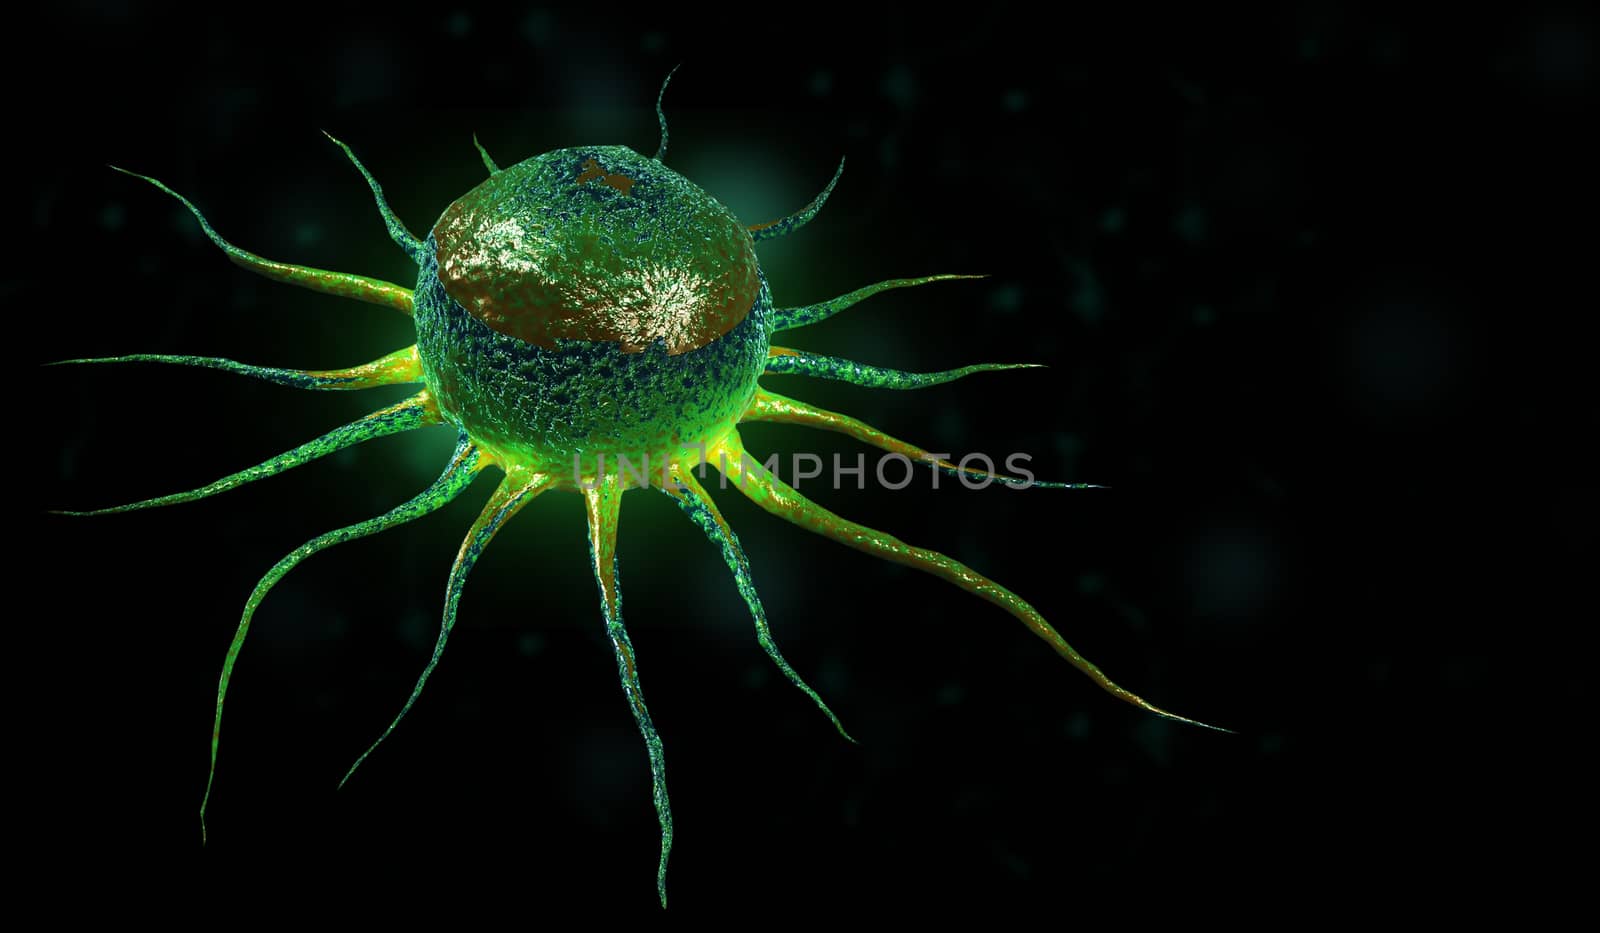 Digital illustration of stem cell in color background